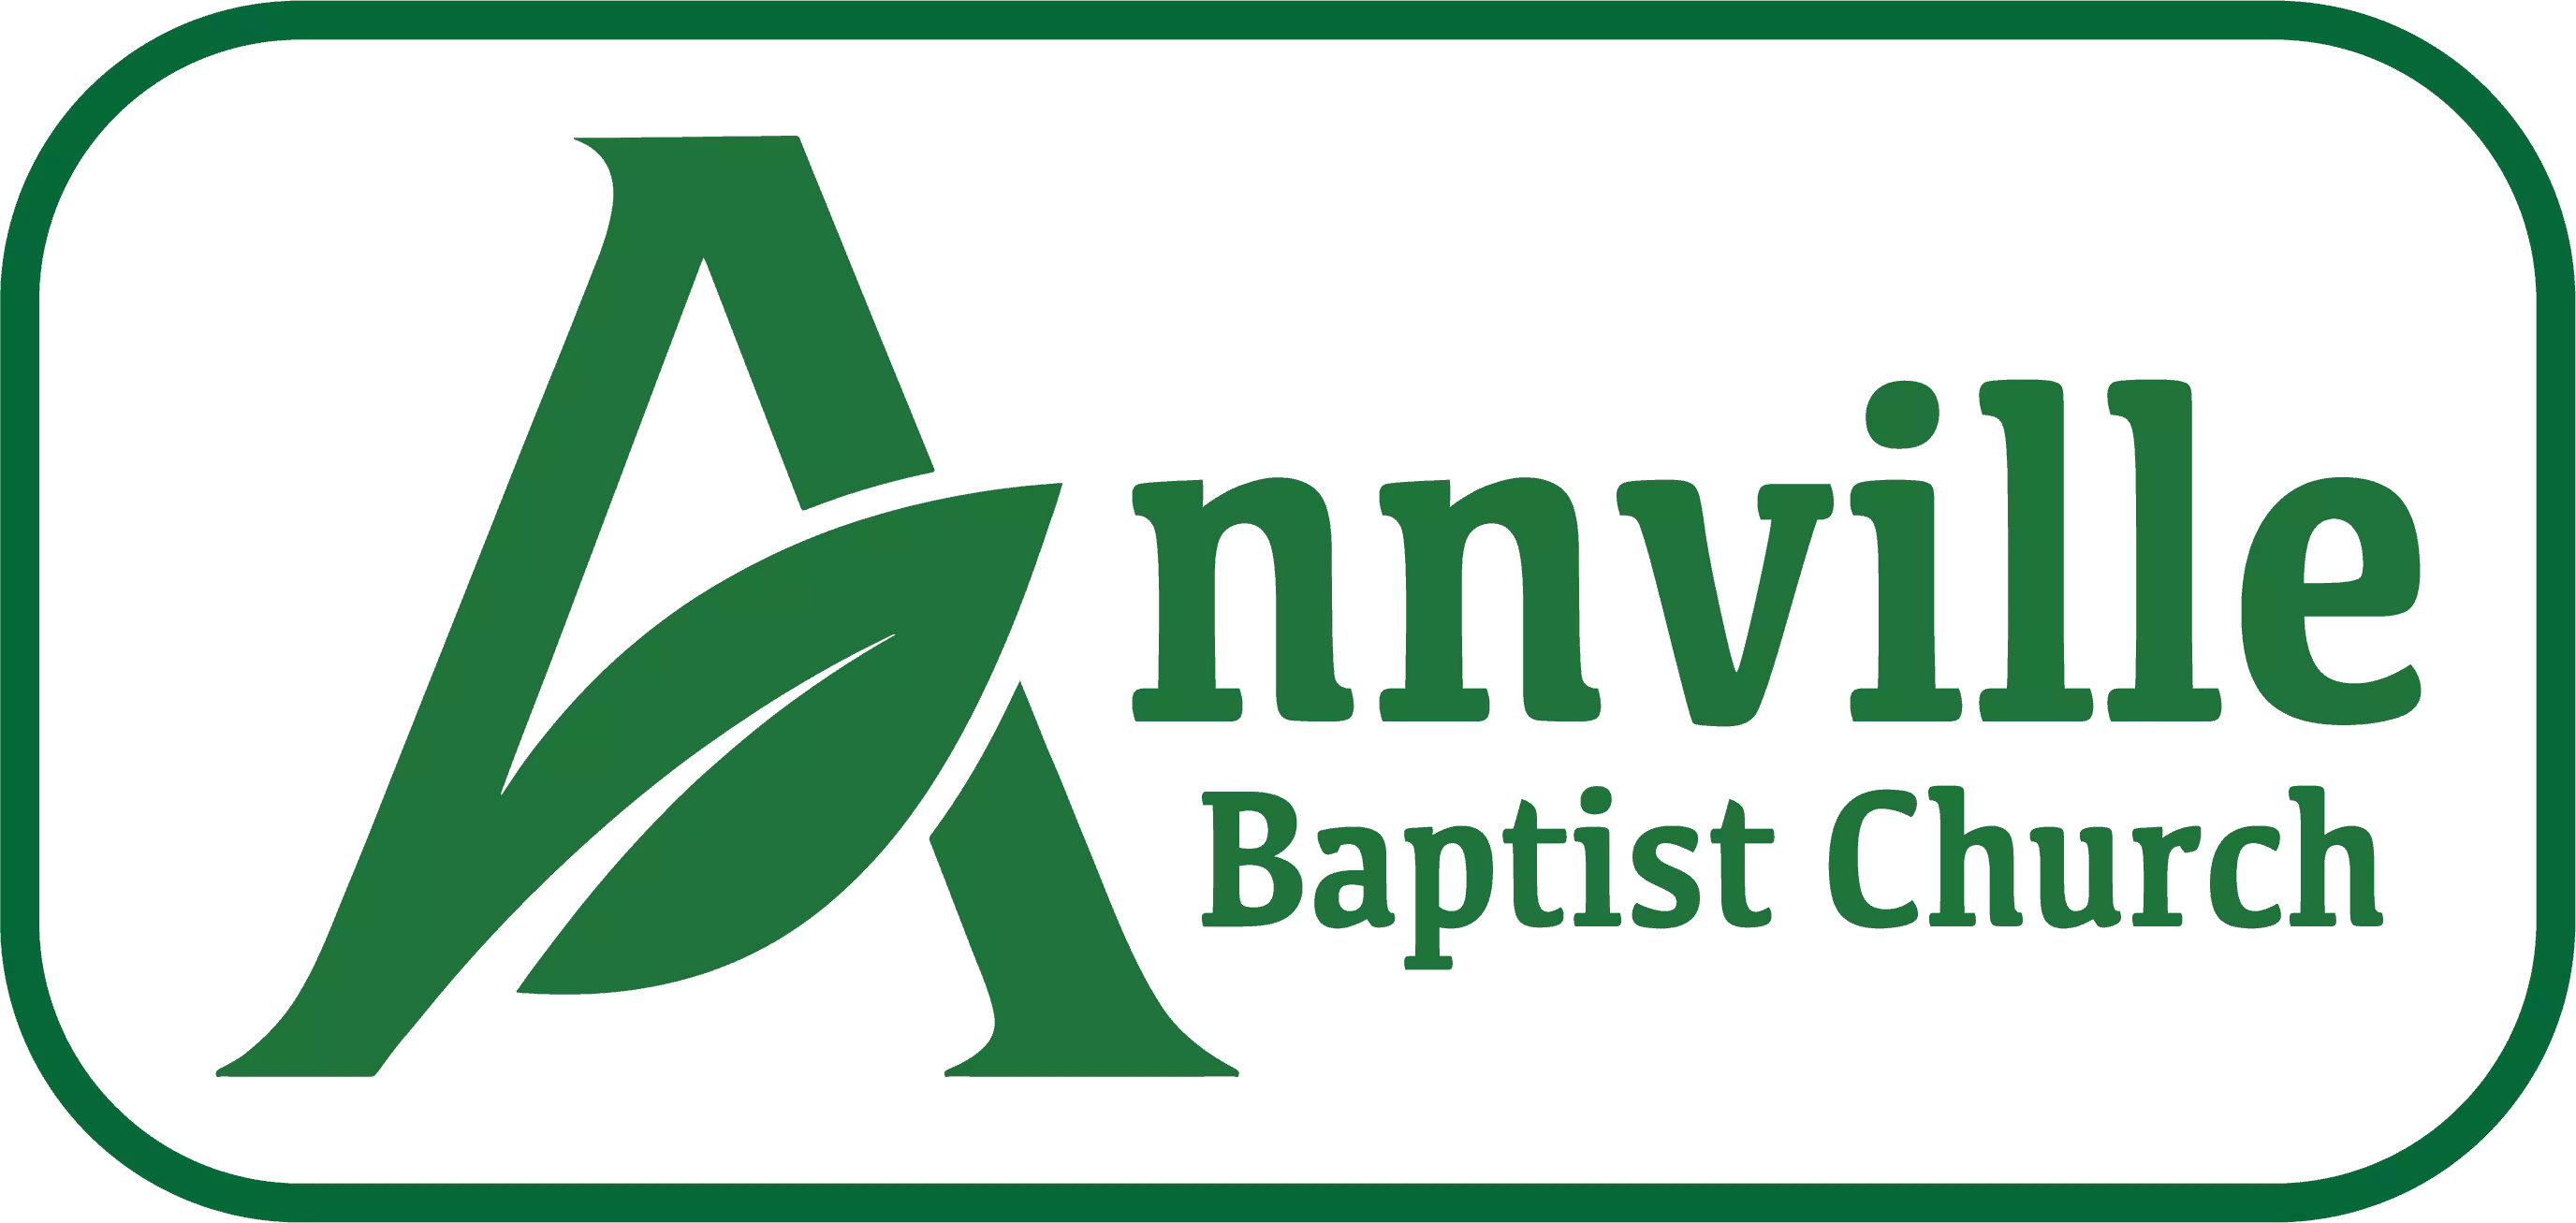 Annville Baptist Church